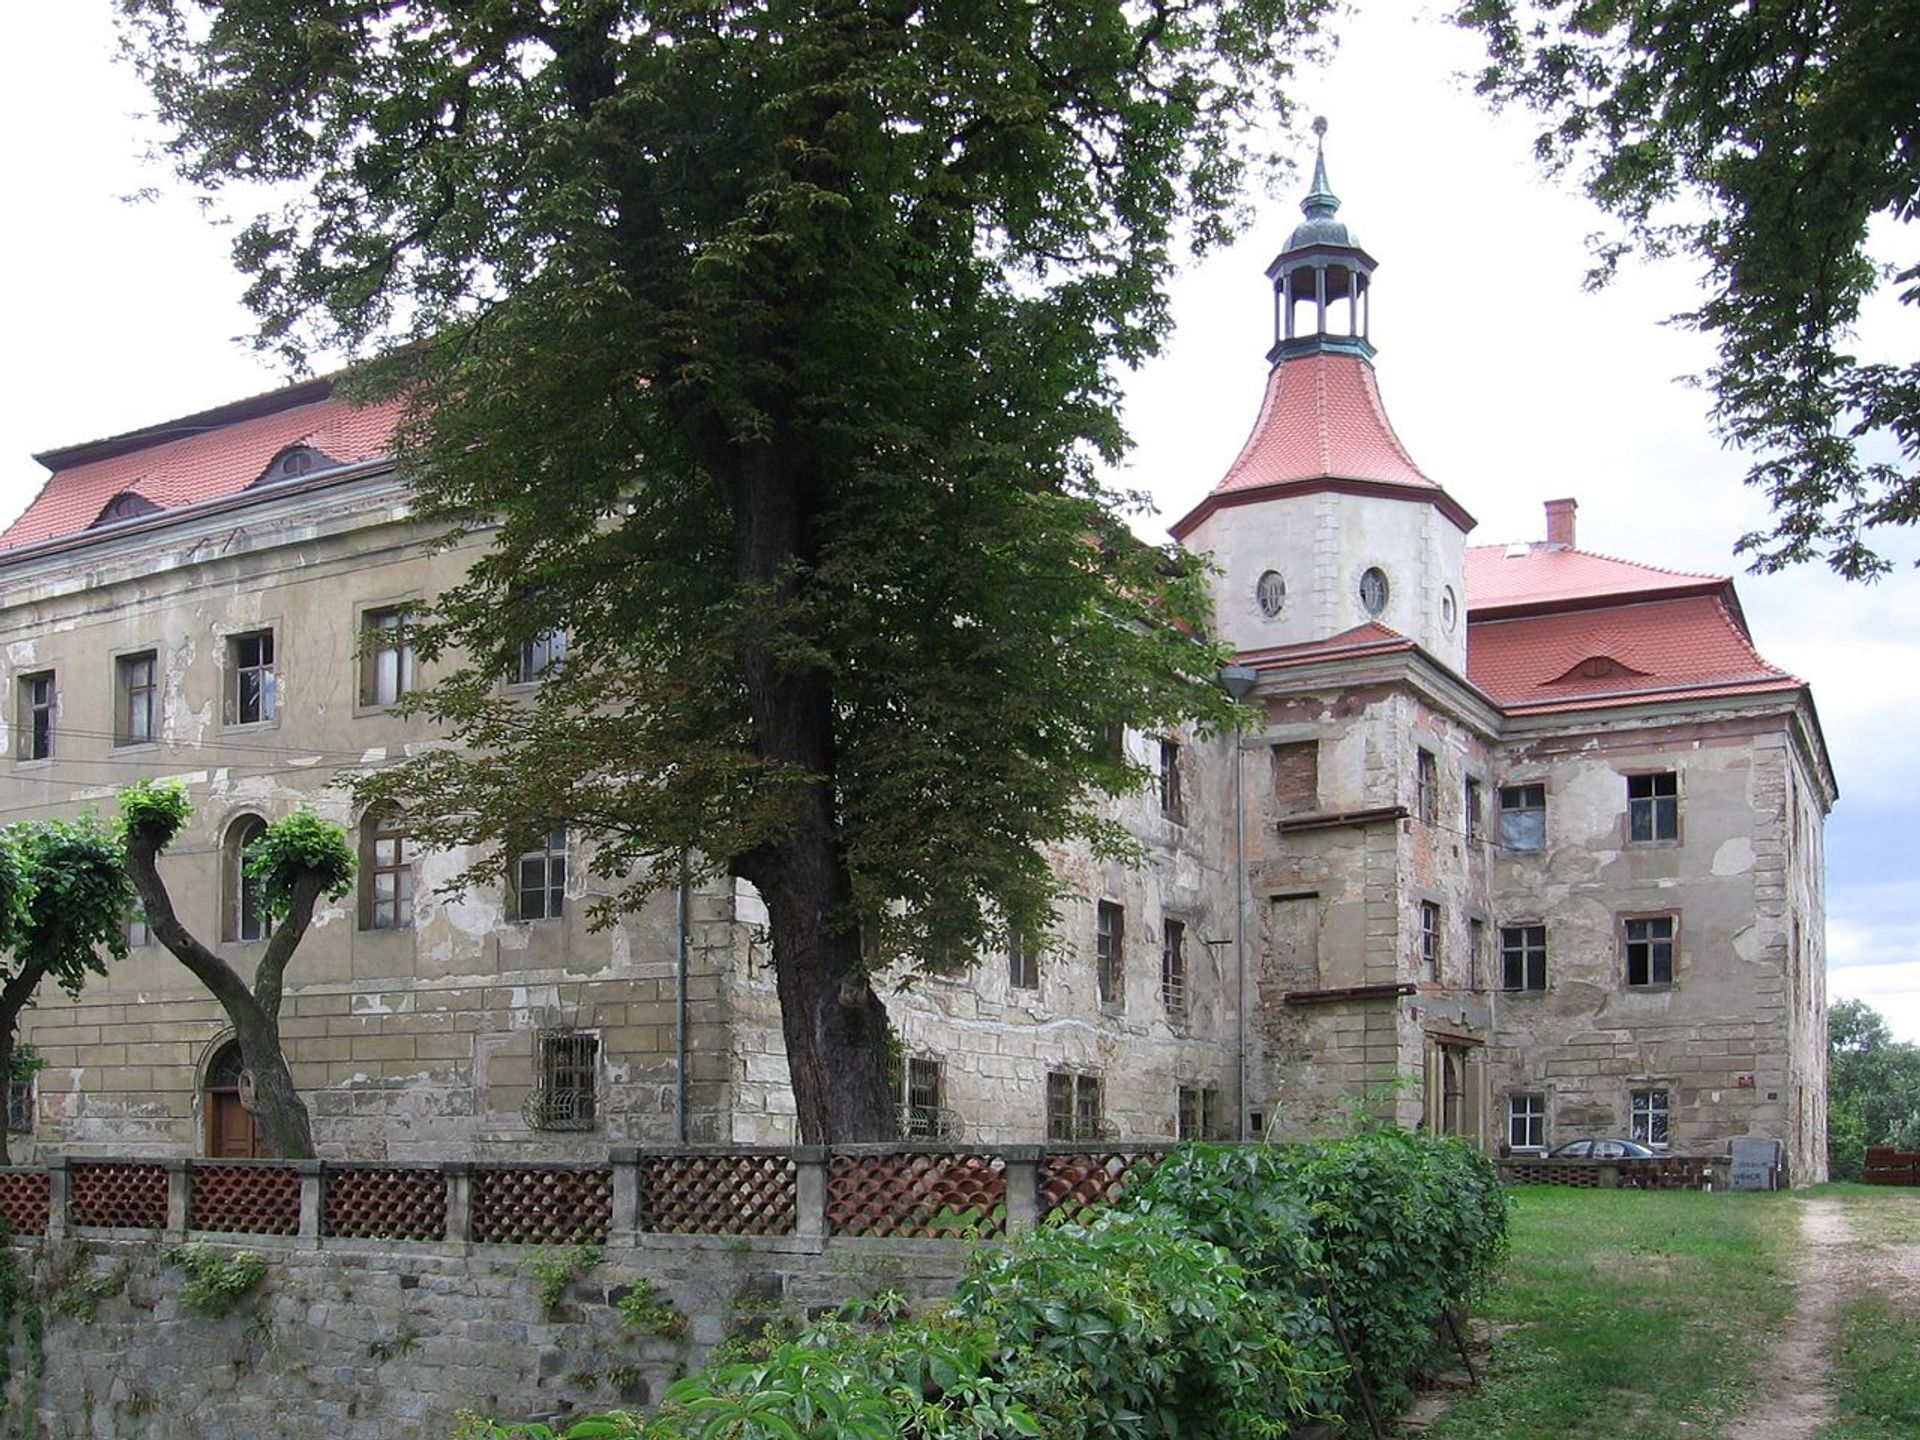 Znany polski aktor kupił zabytkowy pałac w Domanicach na Dolnym Śląsku